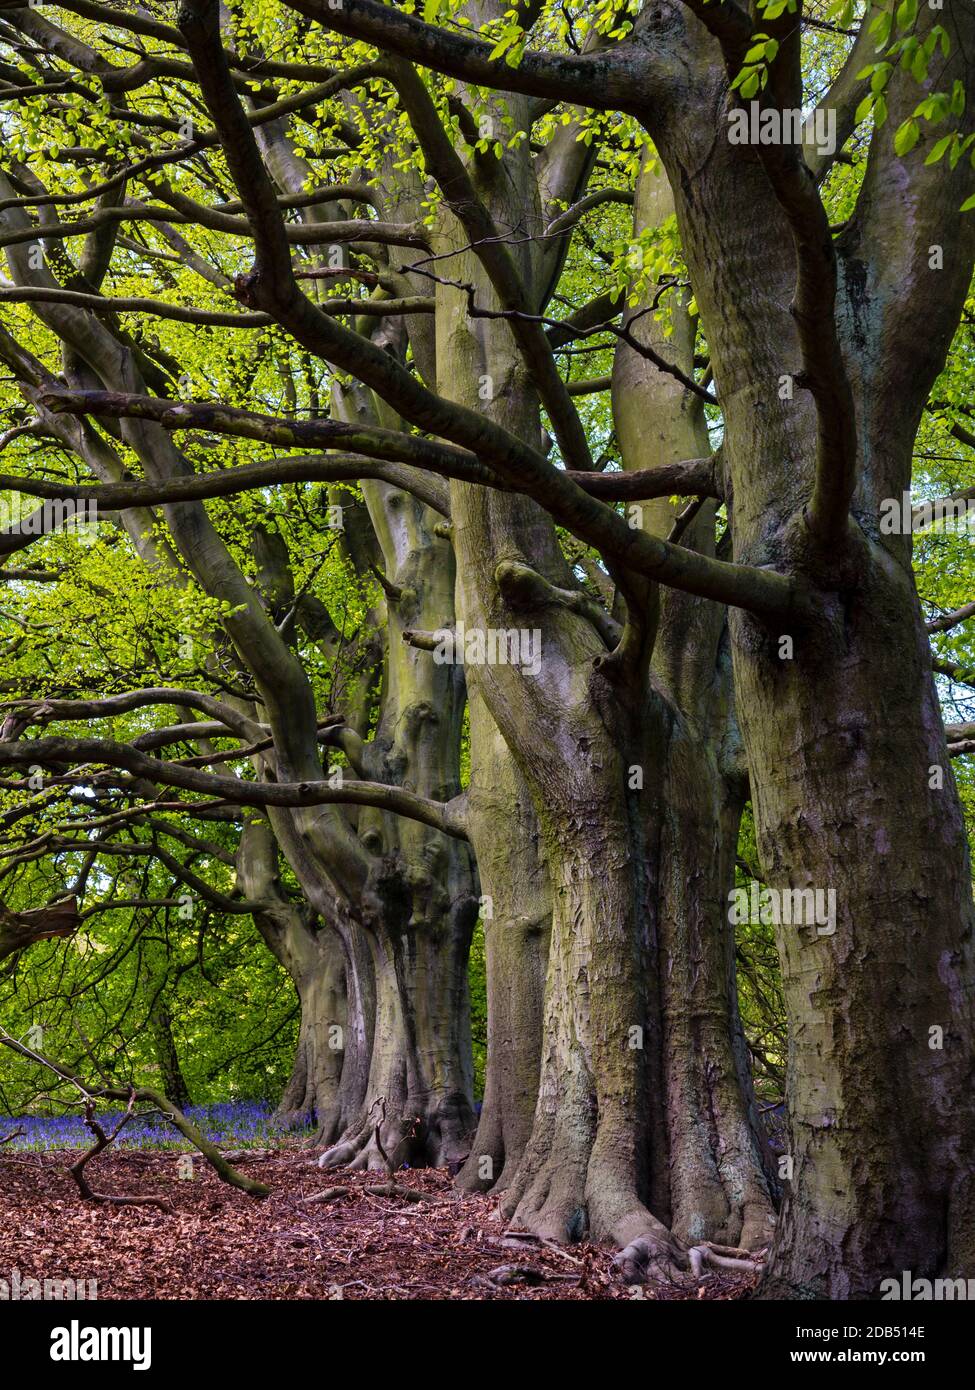 Fagus sylvatica, le hêtre européen ou le hêtre commun, un arbre à feuilles caduques appartenant à la famille des hêtres Fagaceae qui pousse à Bow Wood Derbyshire Royaume-Uni Banque D'Images